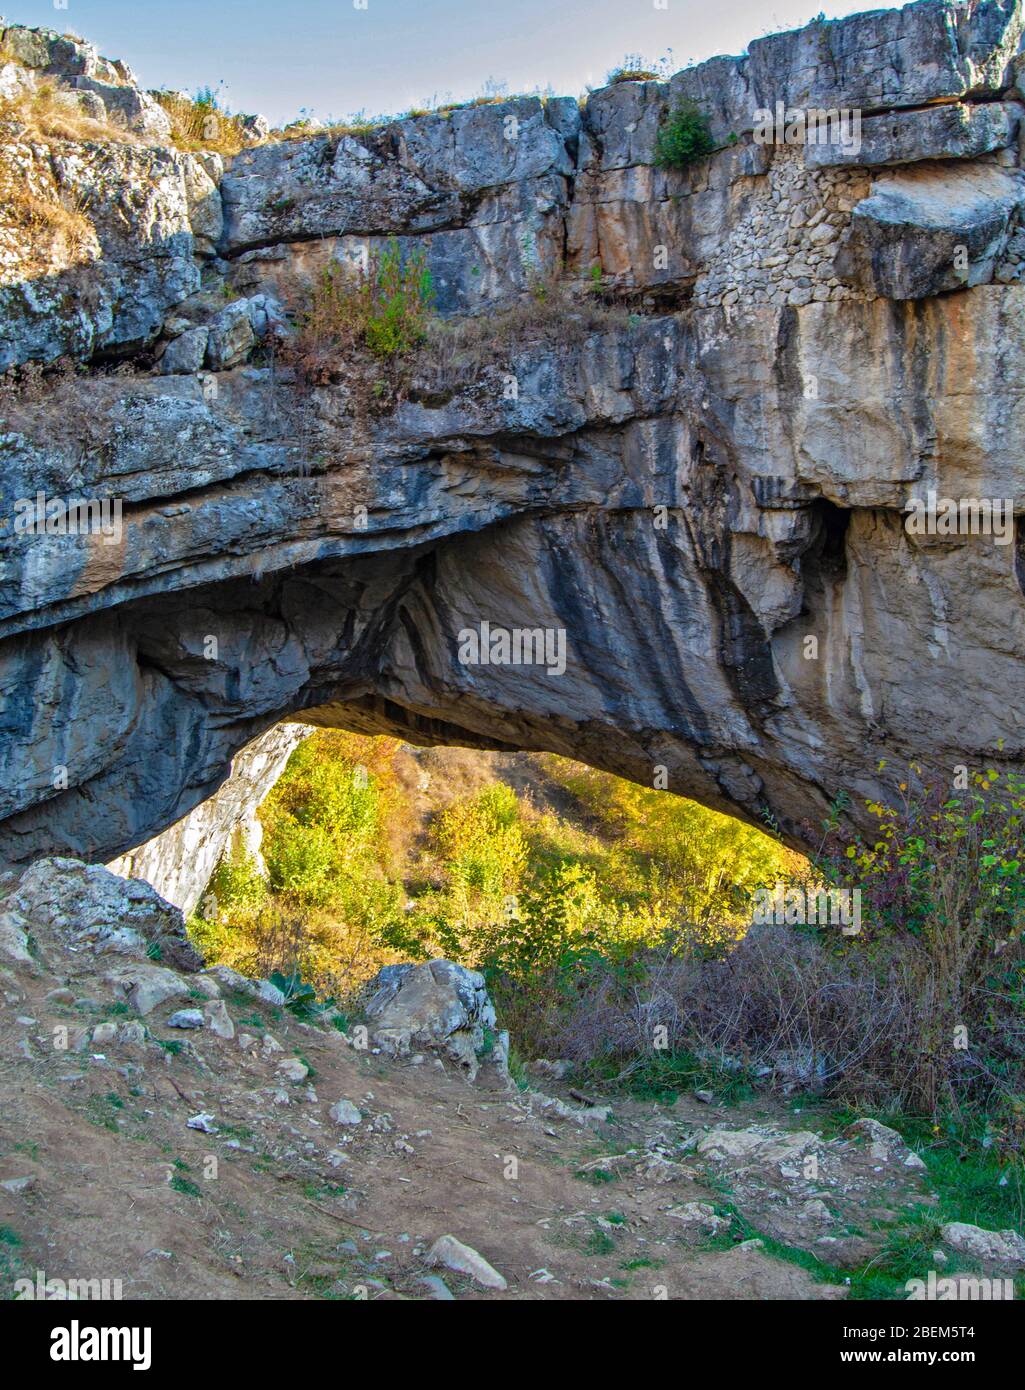 Landschaft mit natürlichen Felsbrücke, die durch eine eingestürzte Höhle, bekannt als Gottes Brücke oder 'Podul lui Dumnezeum' in Ponoarele, Mehedinti, Rumänien, gebildet wird Stockfoto